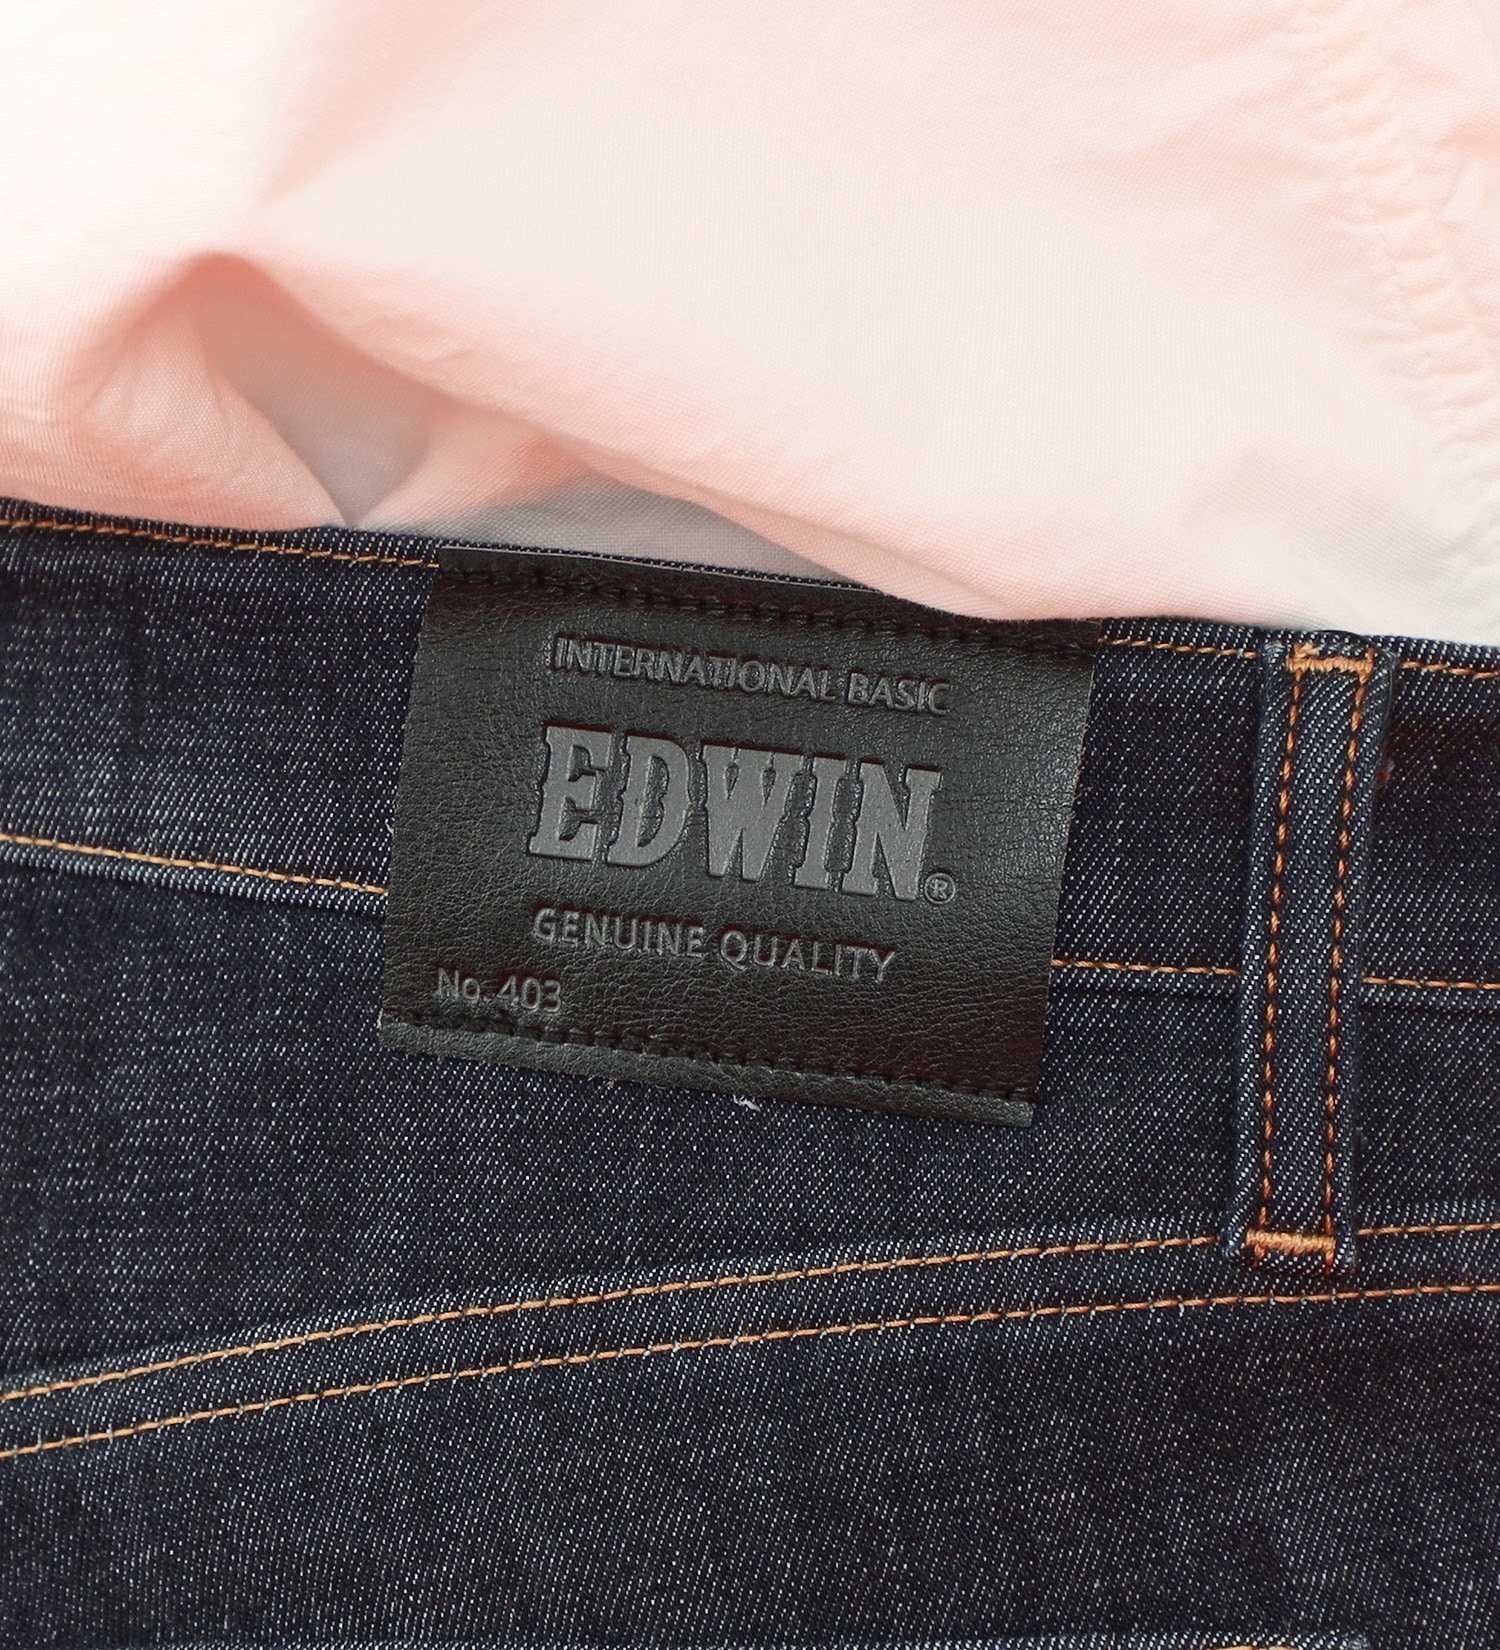 EDWIN(エドウイン)の【BLACKFRIDAY】2層で暖かい EDWIN インターナショナルベーシック レギュラーストレートパンツ403 WILD FIRE 2層ボンディング構造 【暖】|パンツ/パンツ/メンズ|インディゴブルー